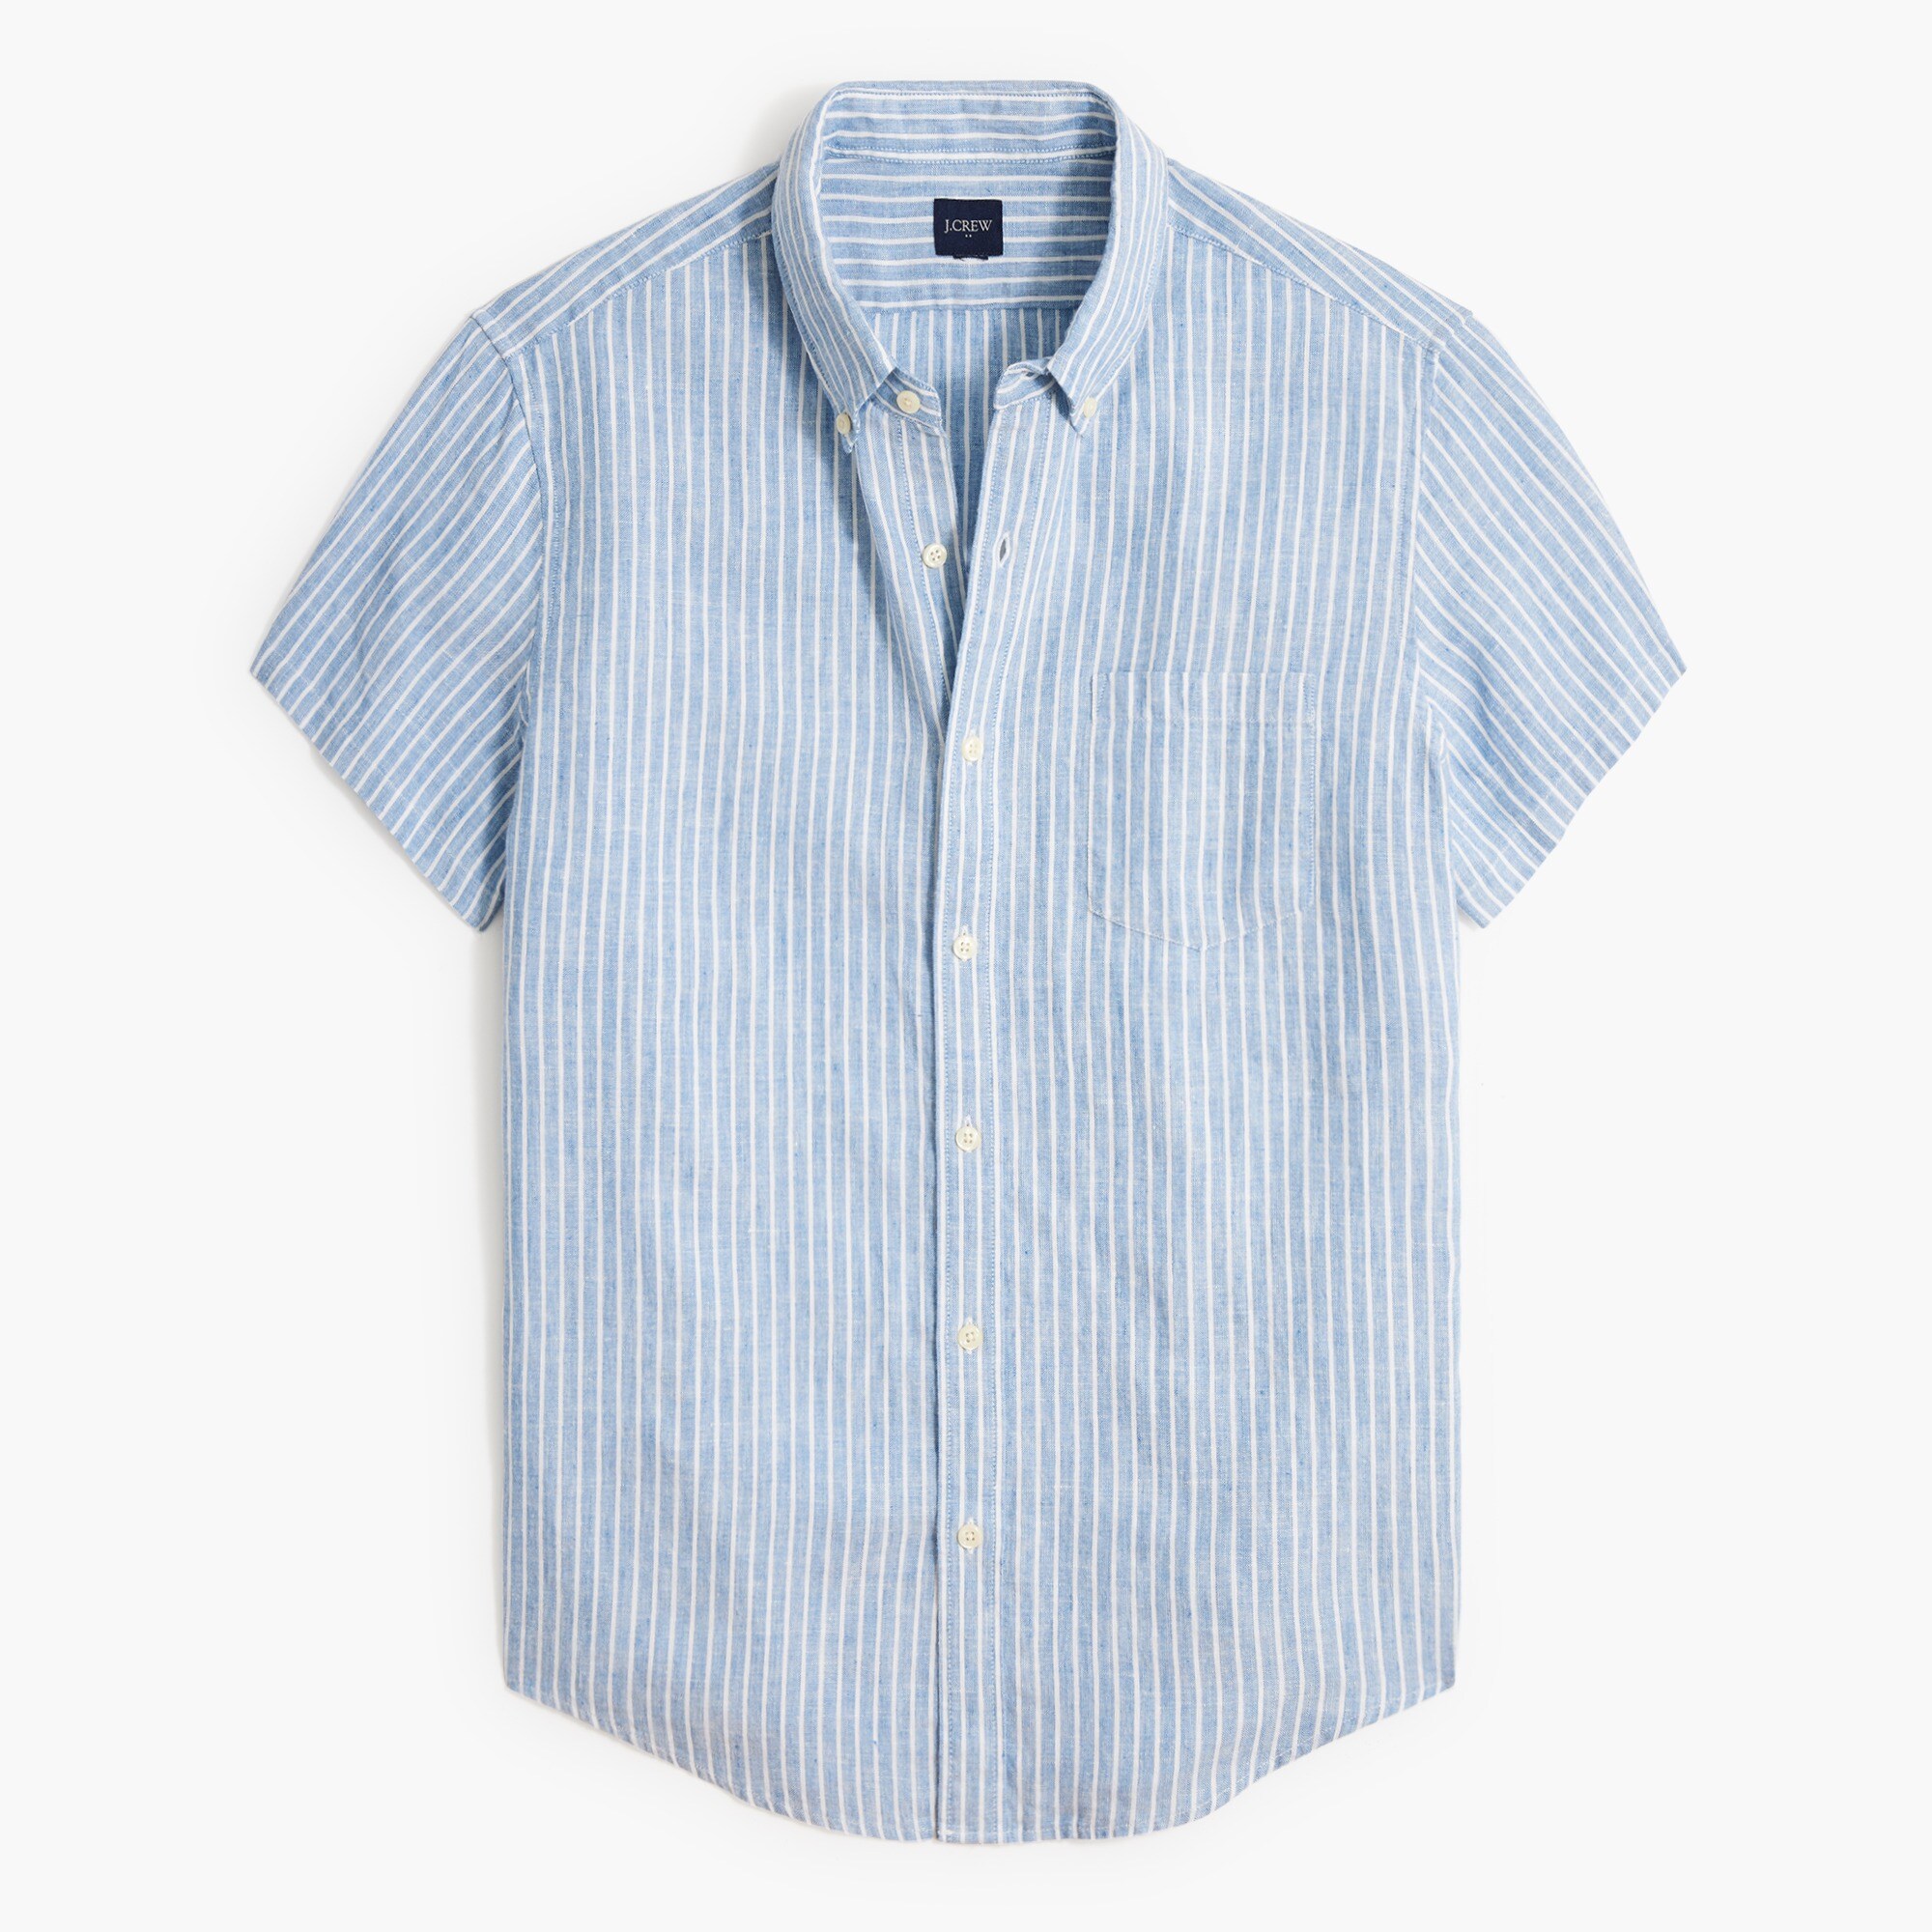  Short-sleeve slim linen-blend shirt